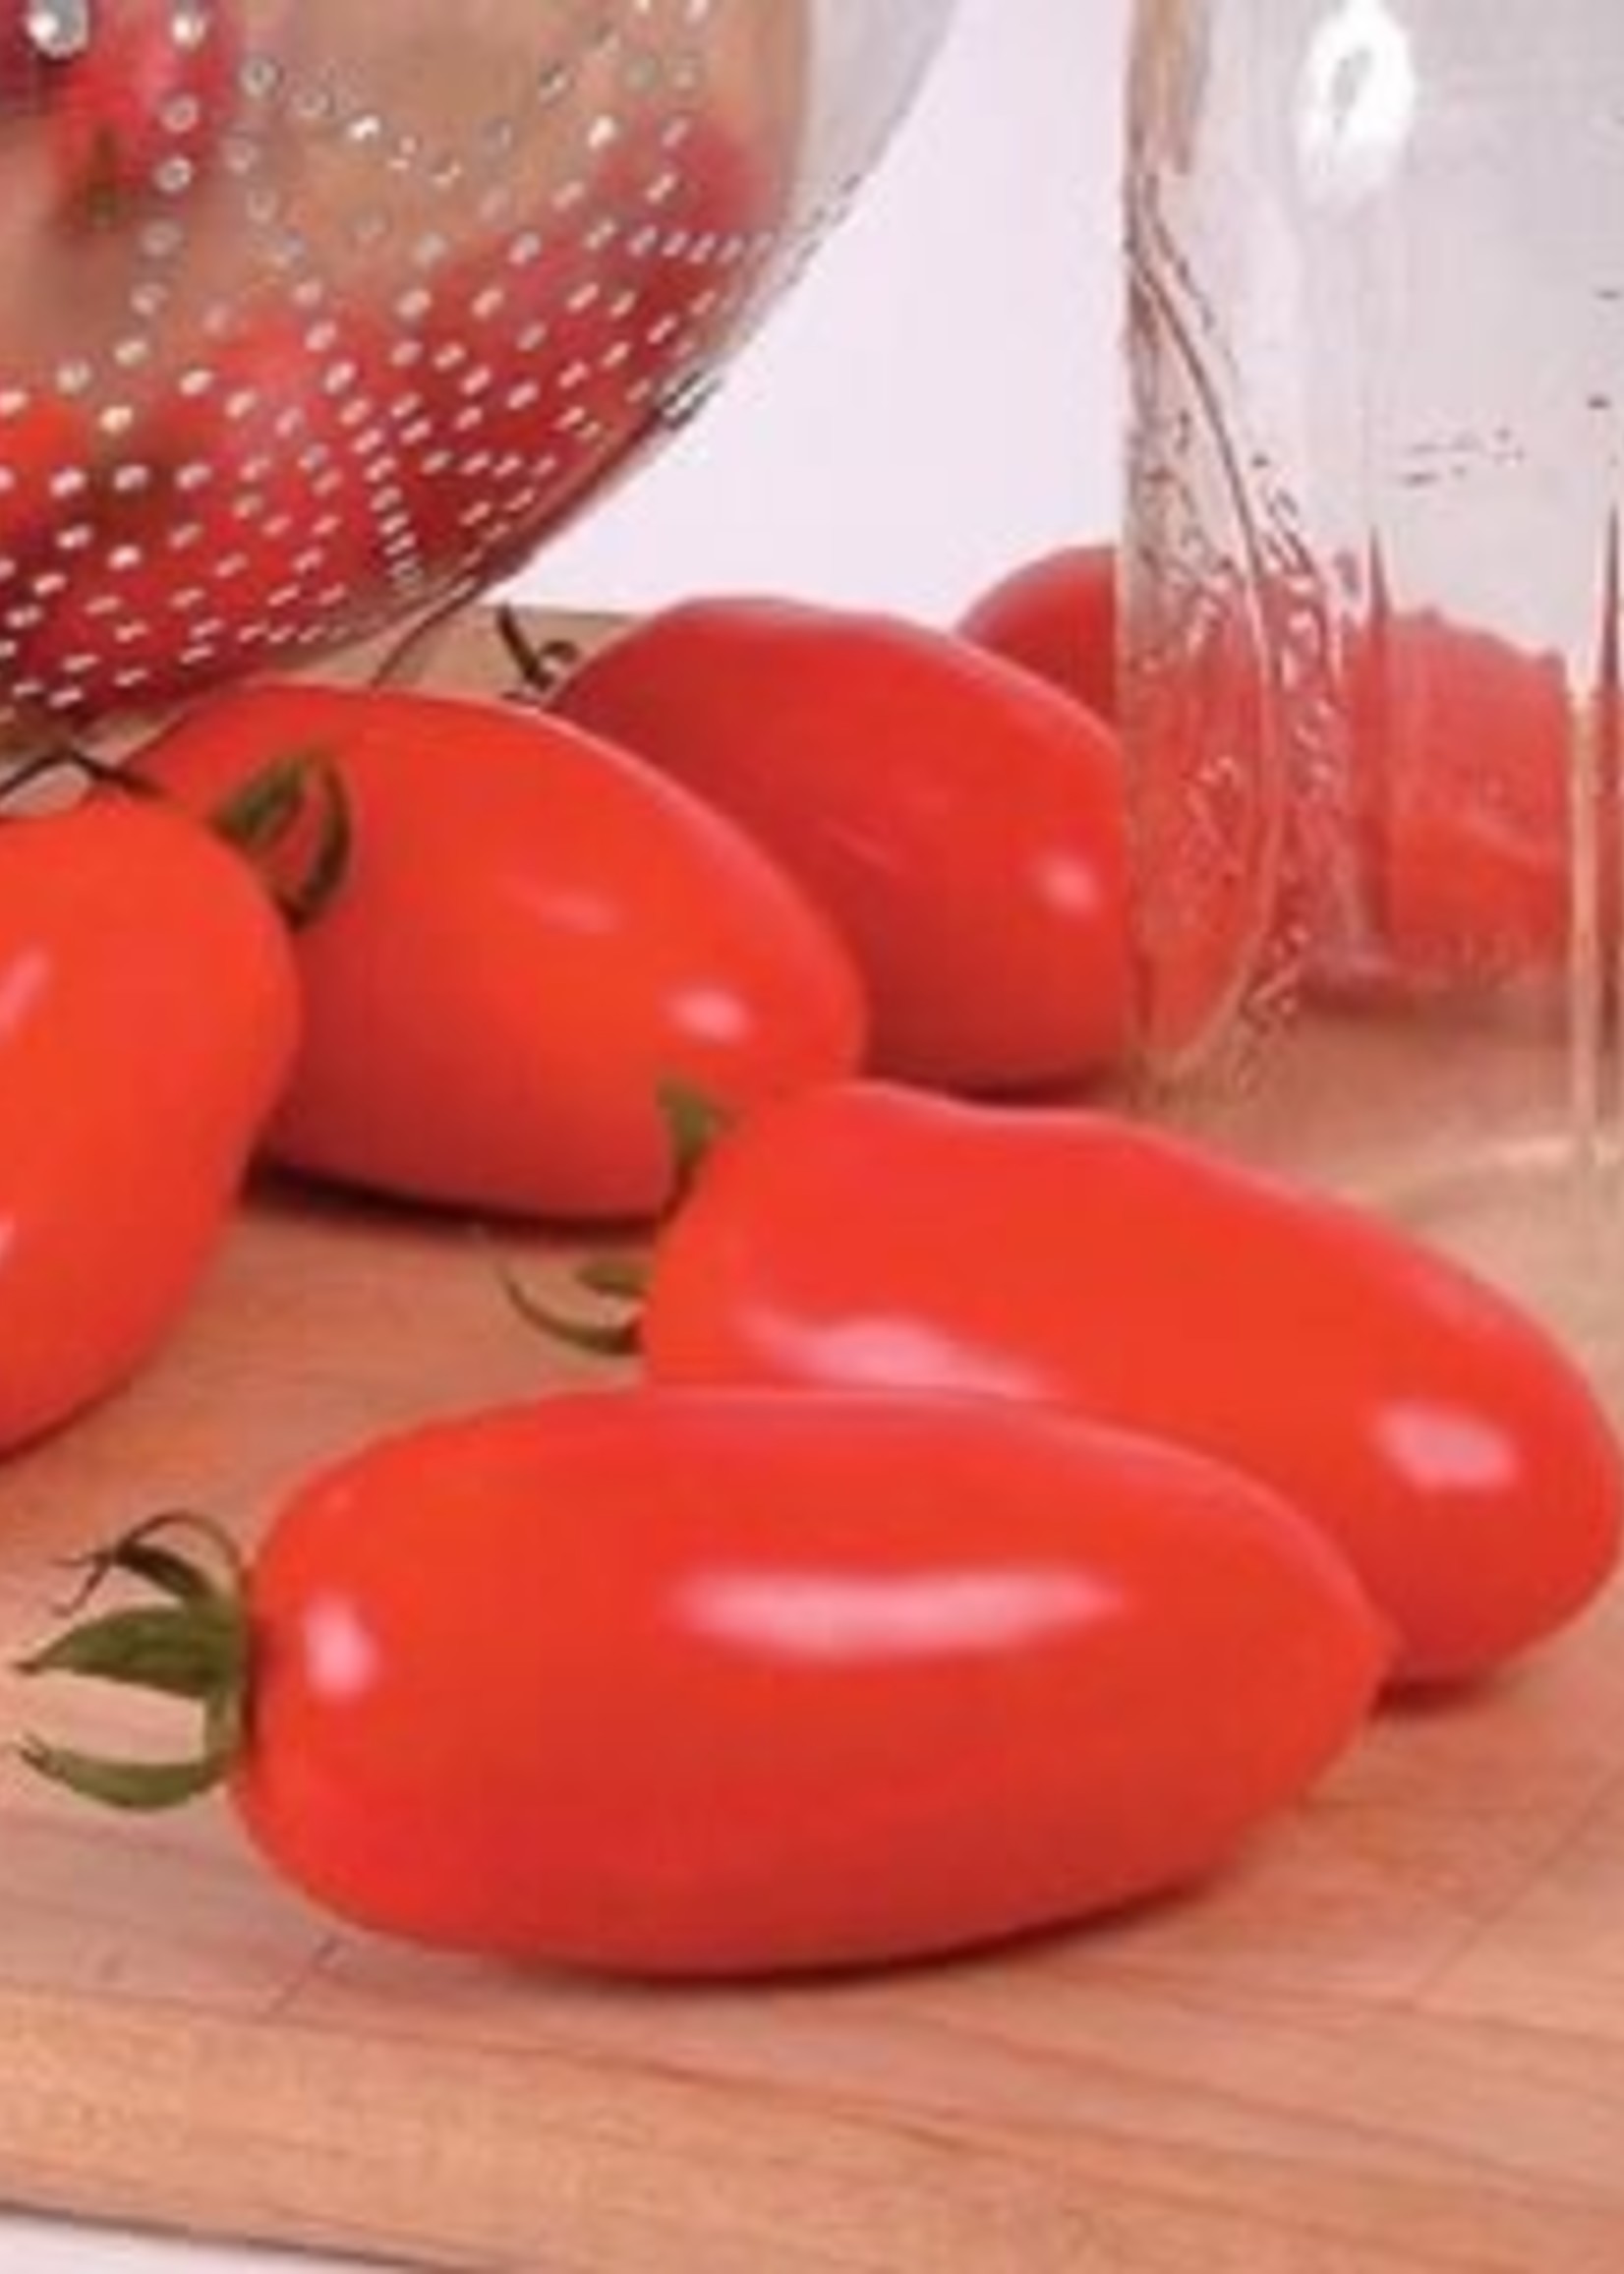 Tomato, San Marzano - Vegetable, organic Qt